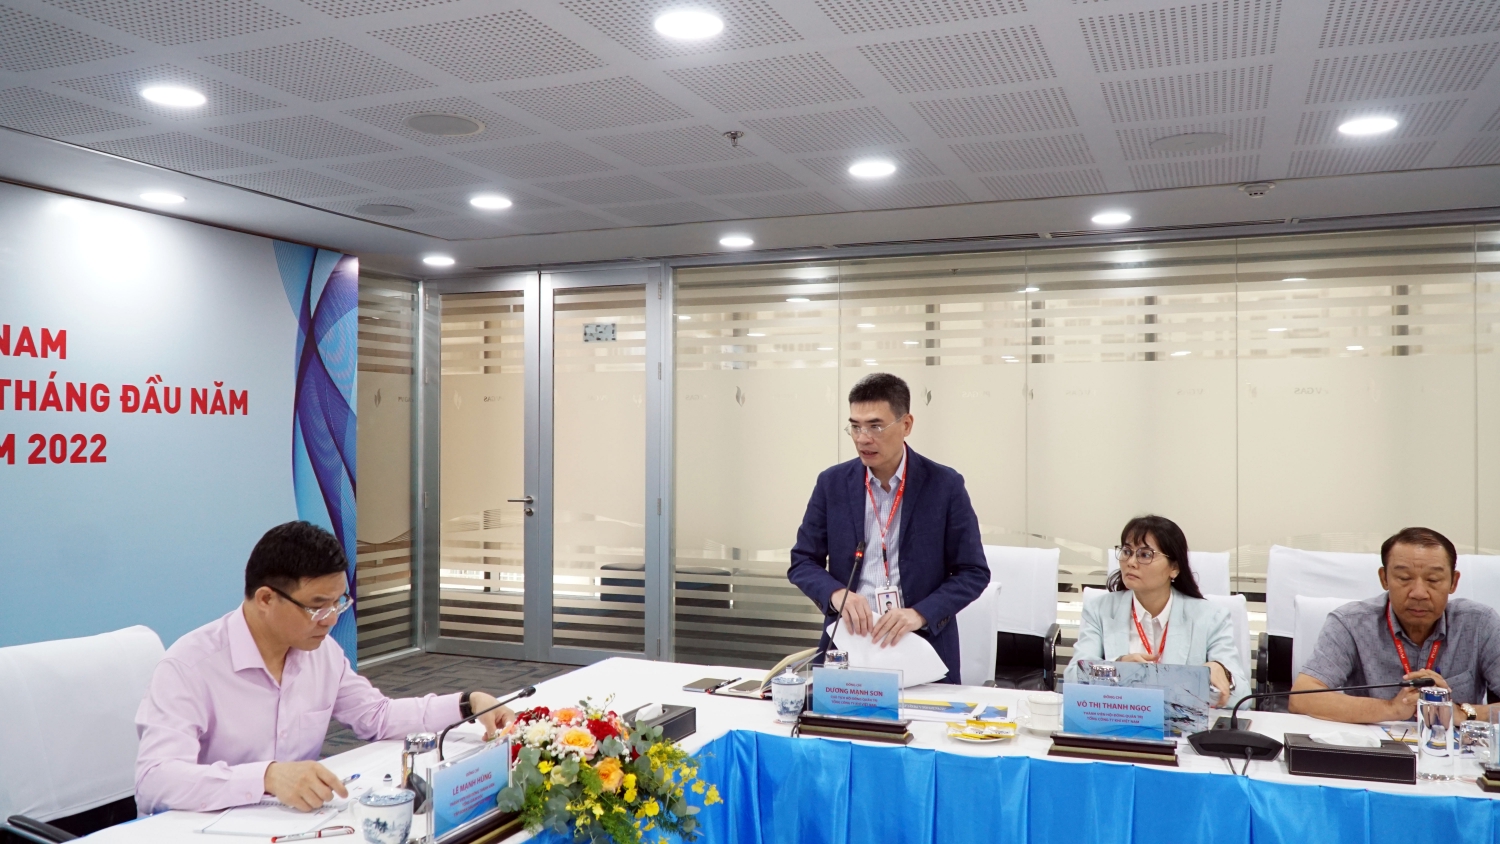 Ông Dương Mạnh Sơn - Bí thư Đảng ủy, Chủ tịch HĐQT PV GAS báo cáo đoàn công tác